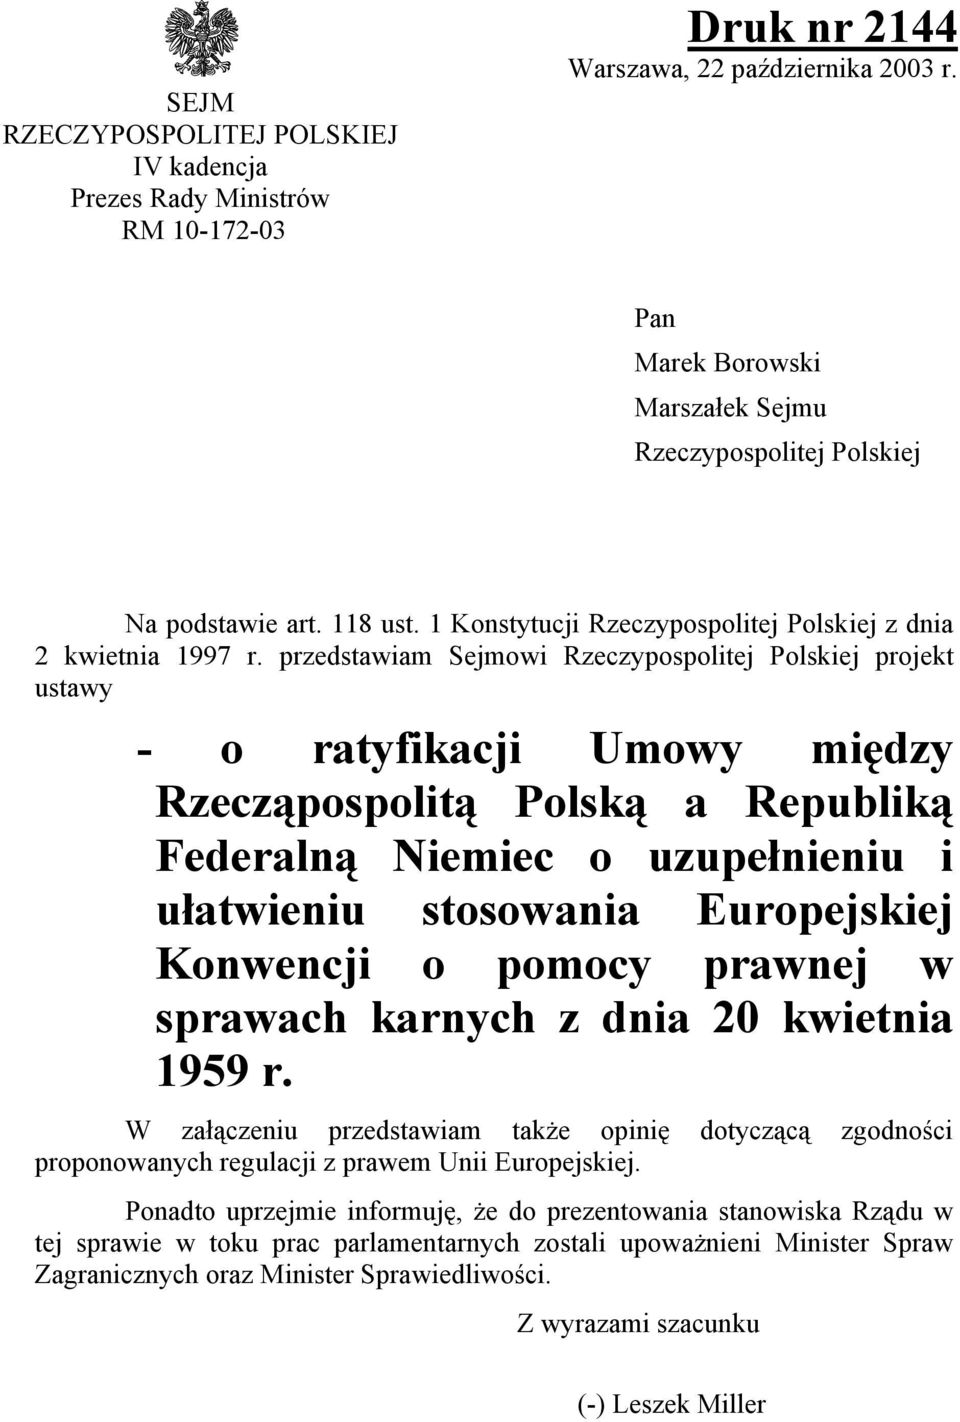 przedstawiam Sejmowi Rzeczypospolitej Polskiej projekt ustawy - o ratyfikacji Umowy między Rzecząpospolitą Polską a Republiką Federalną Niemiec o uzupełnieniu i ułatwieniu stosowania Europejskiej